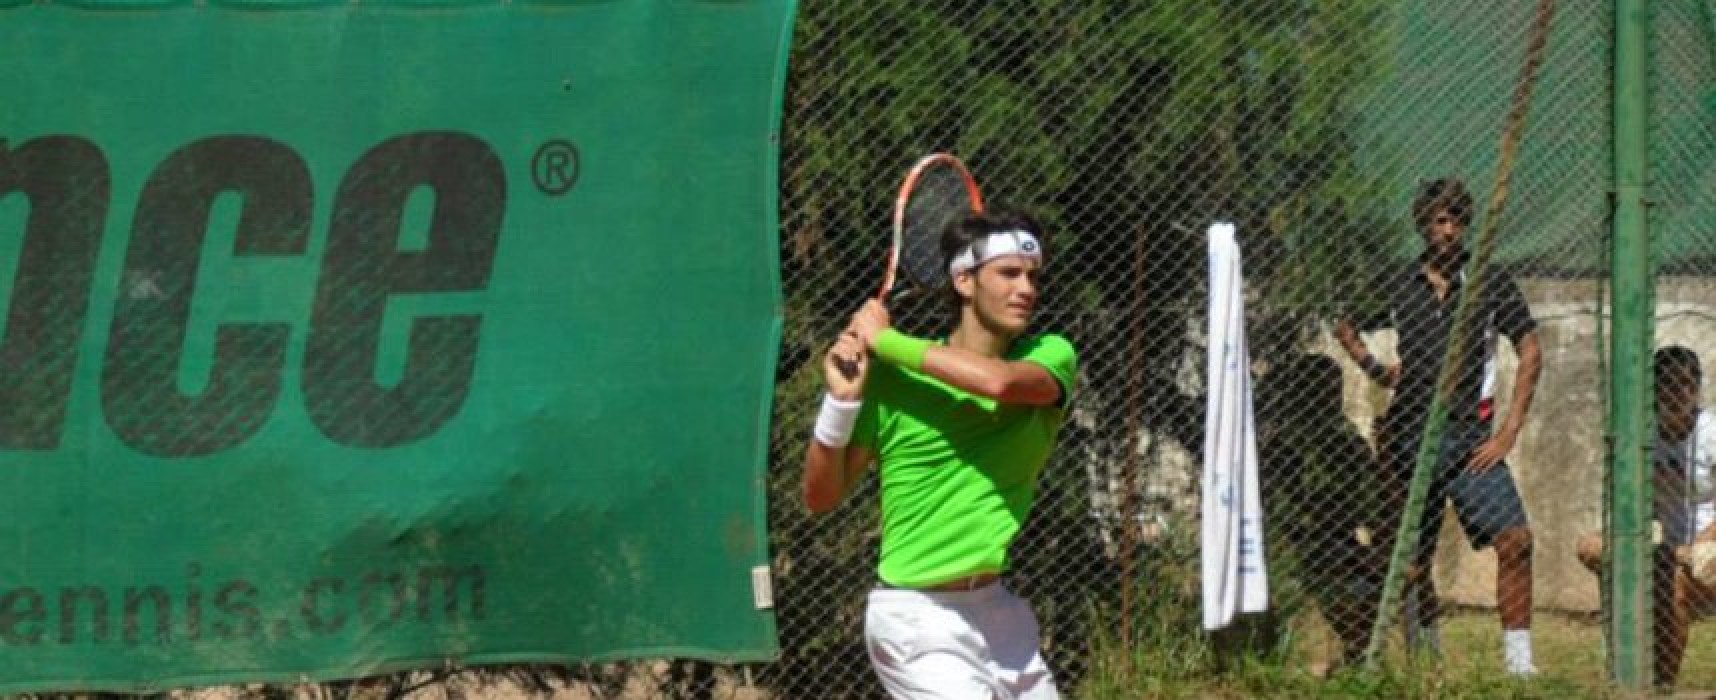 Tennis, Pellegrino accede al tabellone del “Damiani’s Futures”